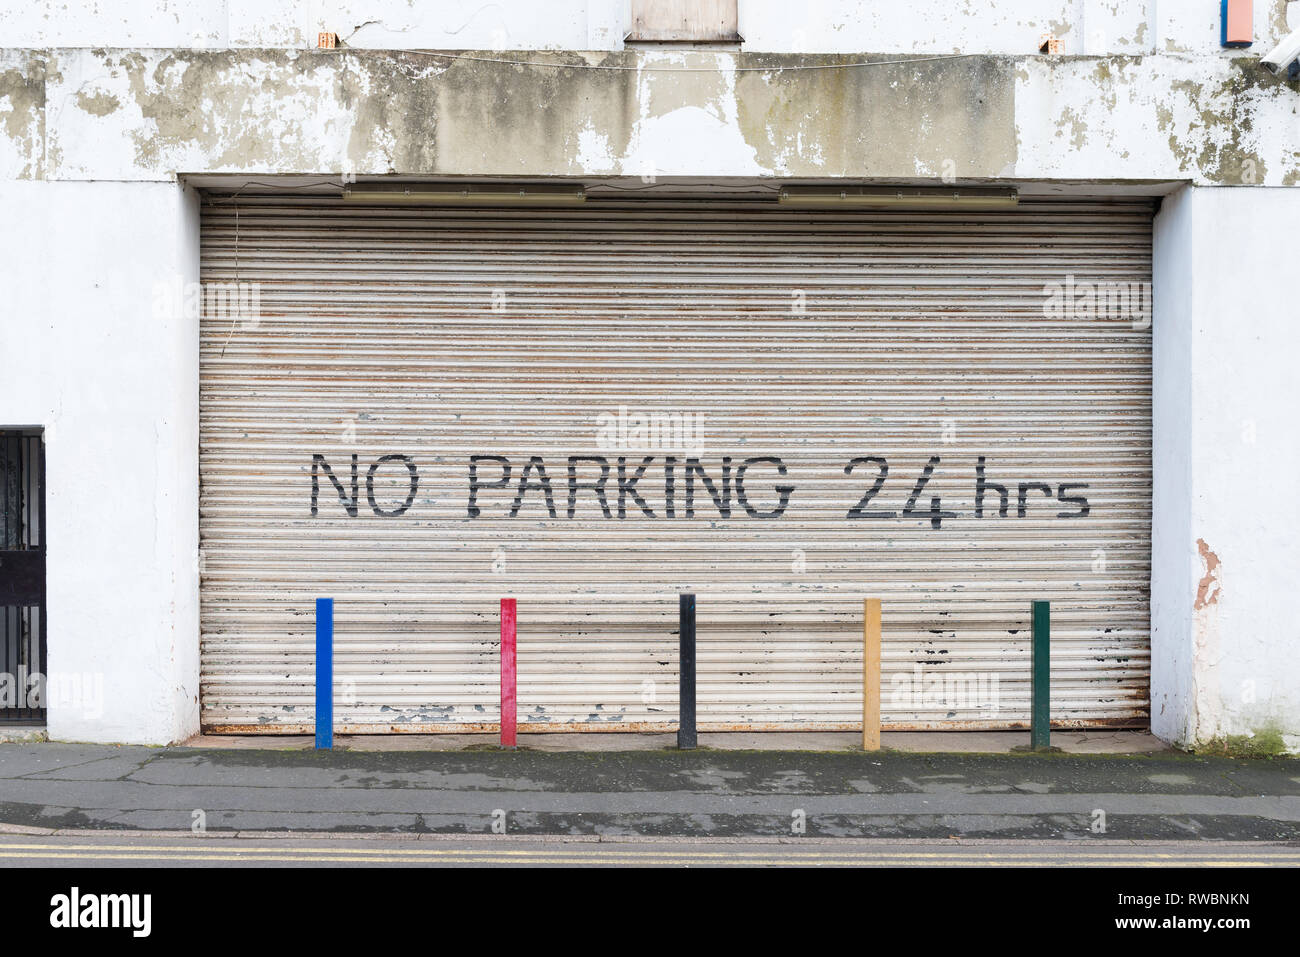 Grande rullo industriale otturatore chiuso con la scrittura di alcun parcheggio 24 ore e colonnine colorate Foto Stock